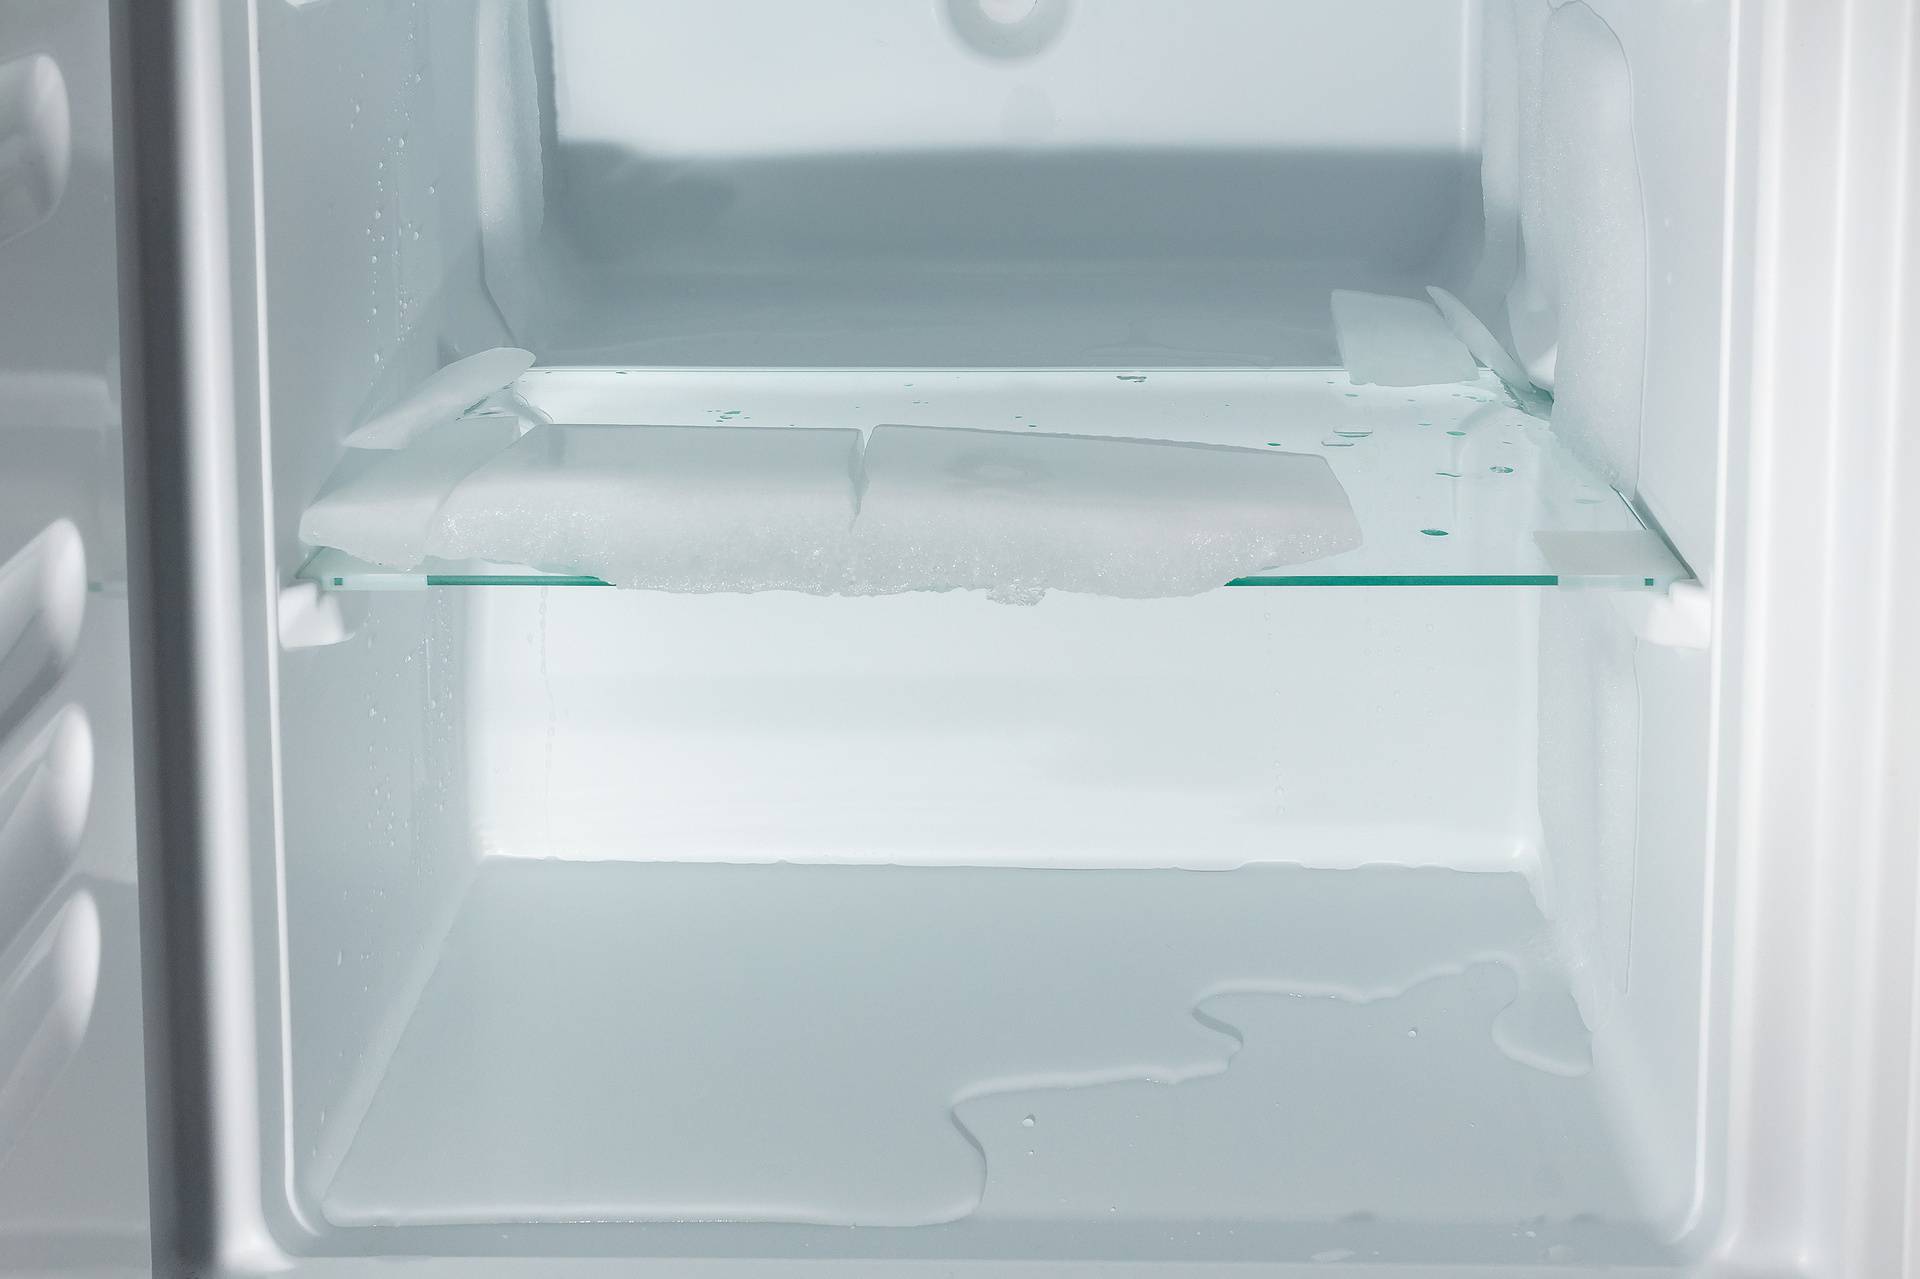 Evo kako se riješiti leda koji se uporno nakuplja u hladnjaku